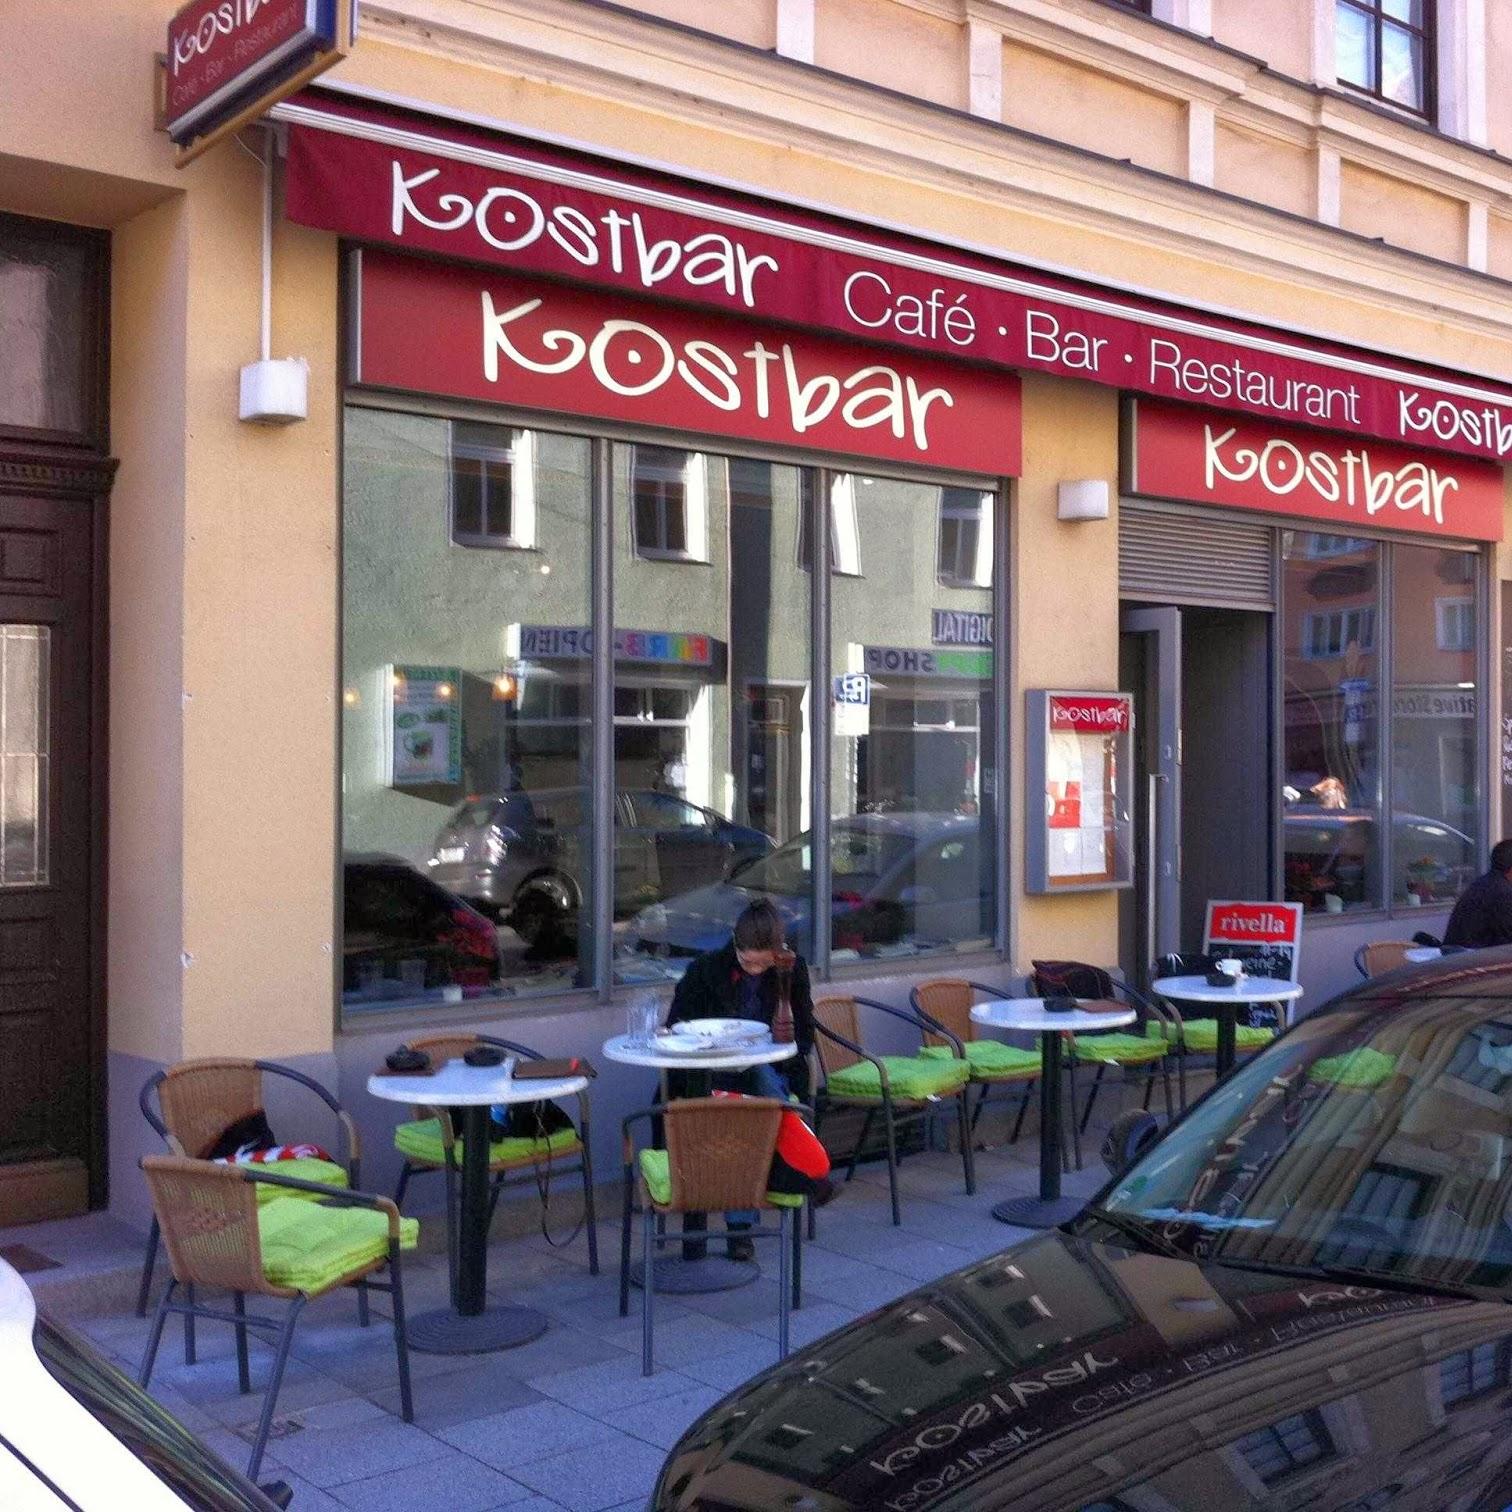 Restaurant "Kostbar" in München